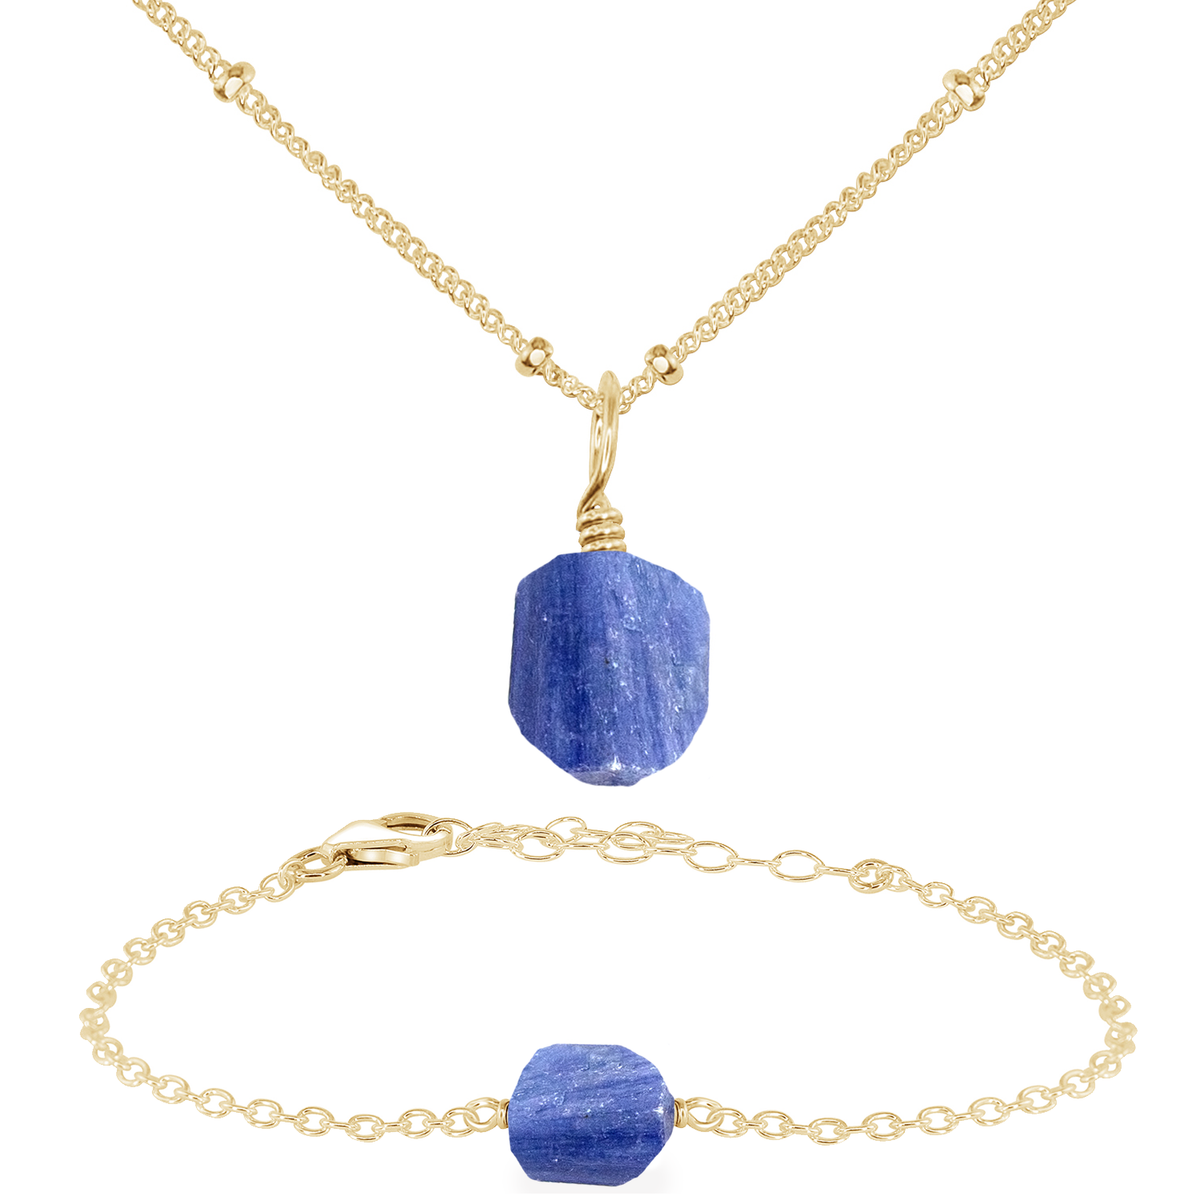 Raw Kyanite Crystal Jewellery Set - Raw Kyanite Crystal Jewellery Set - 14k Gold Fill / Satellite / Necklace & Bracelet - Luna Tide Handmade Crystal Jewellery